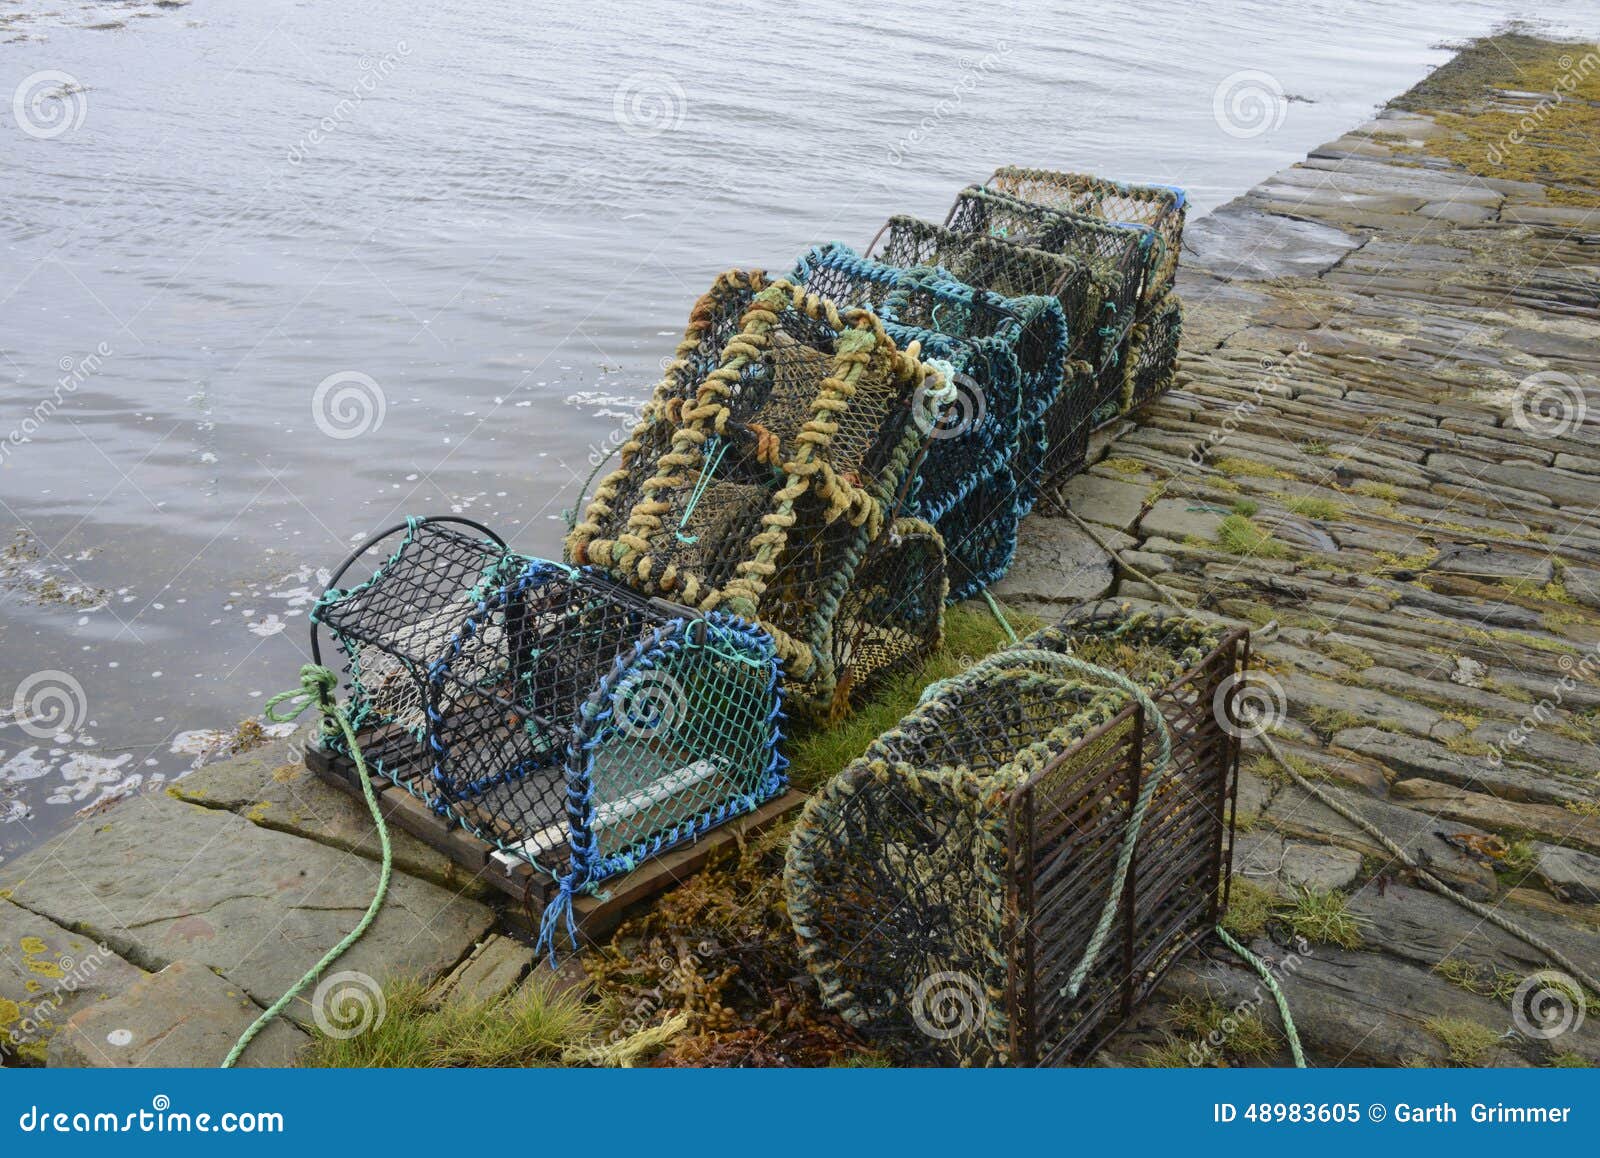 Fishing Creels on Dockside. Stock Image - Image of fleet, netting